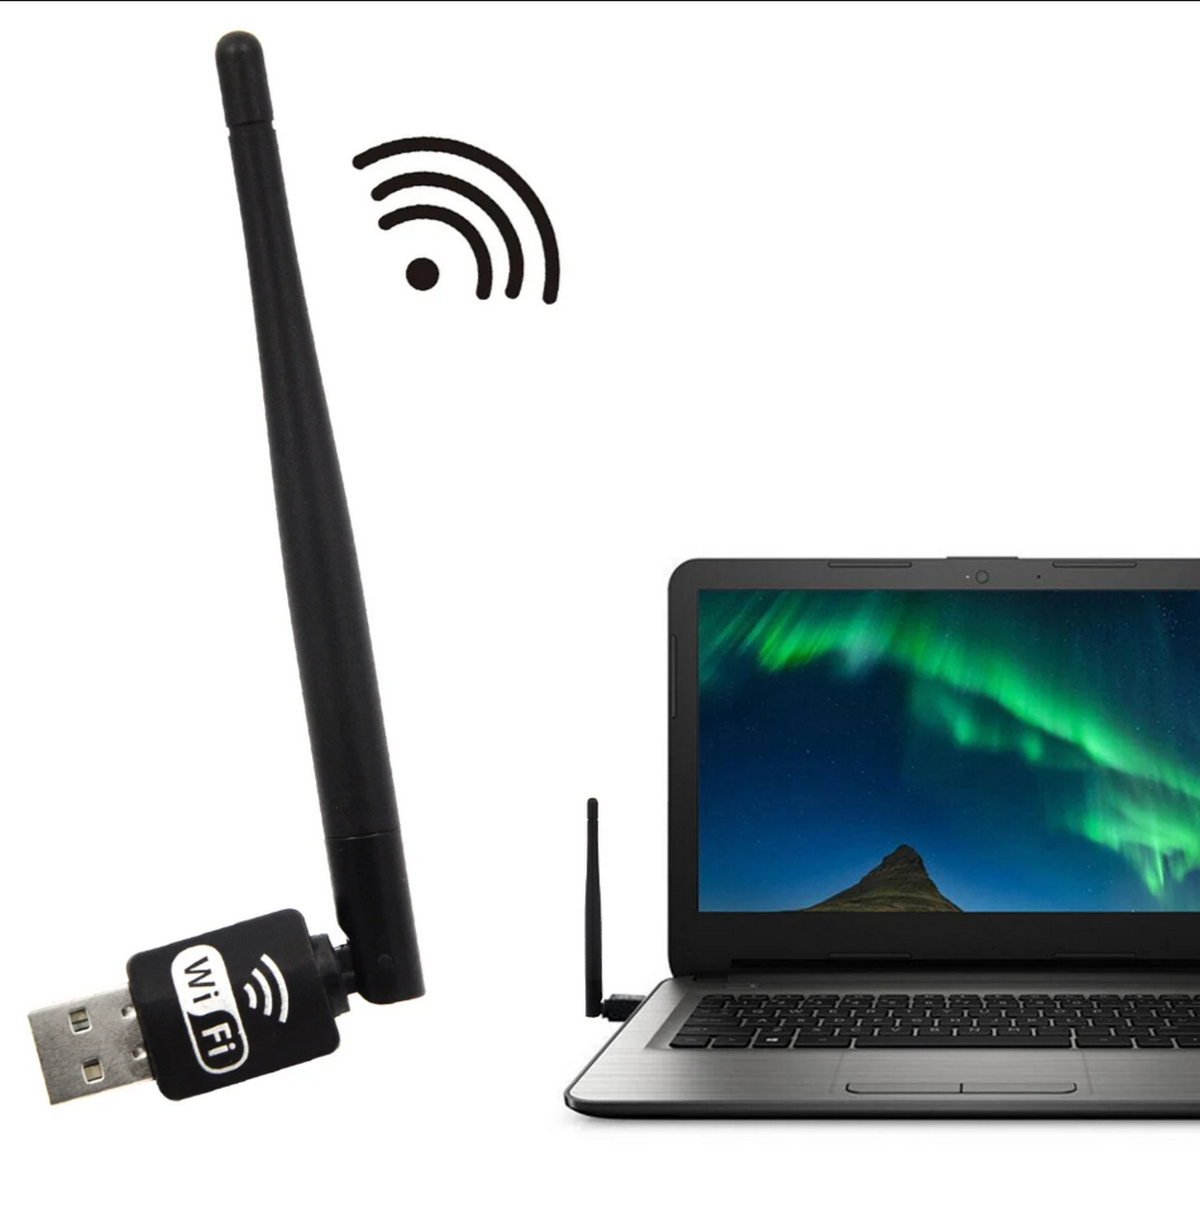 Wi-Fi адаптер Pix-Link LV-UW10RK-5DB (PC/STB) 5DBi (черный)